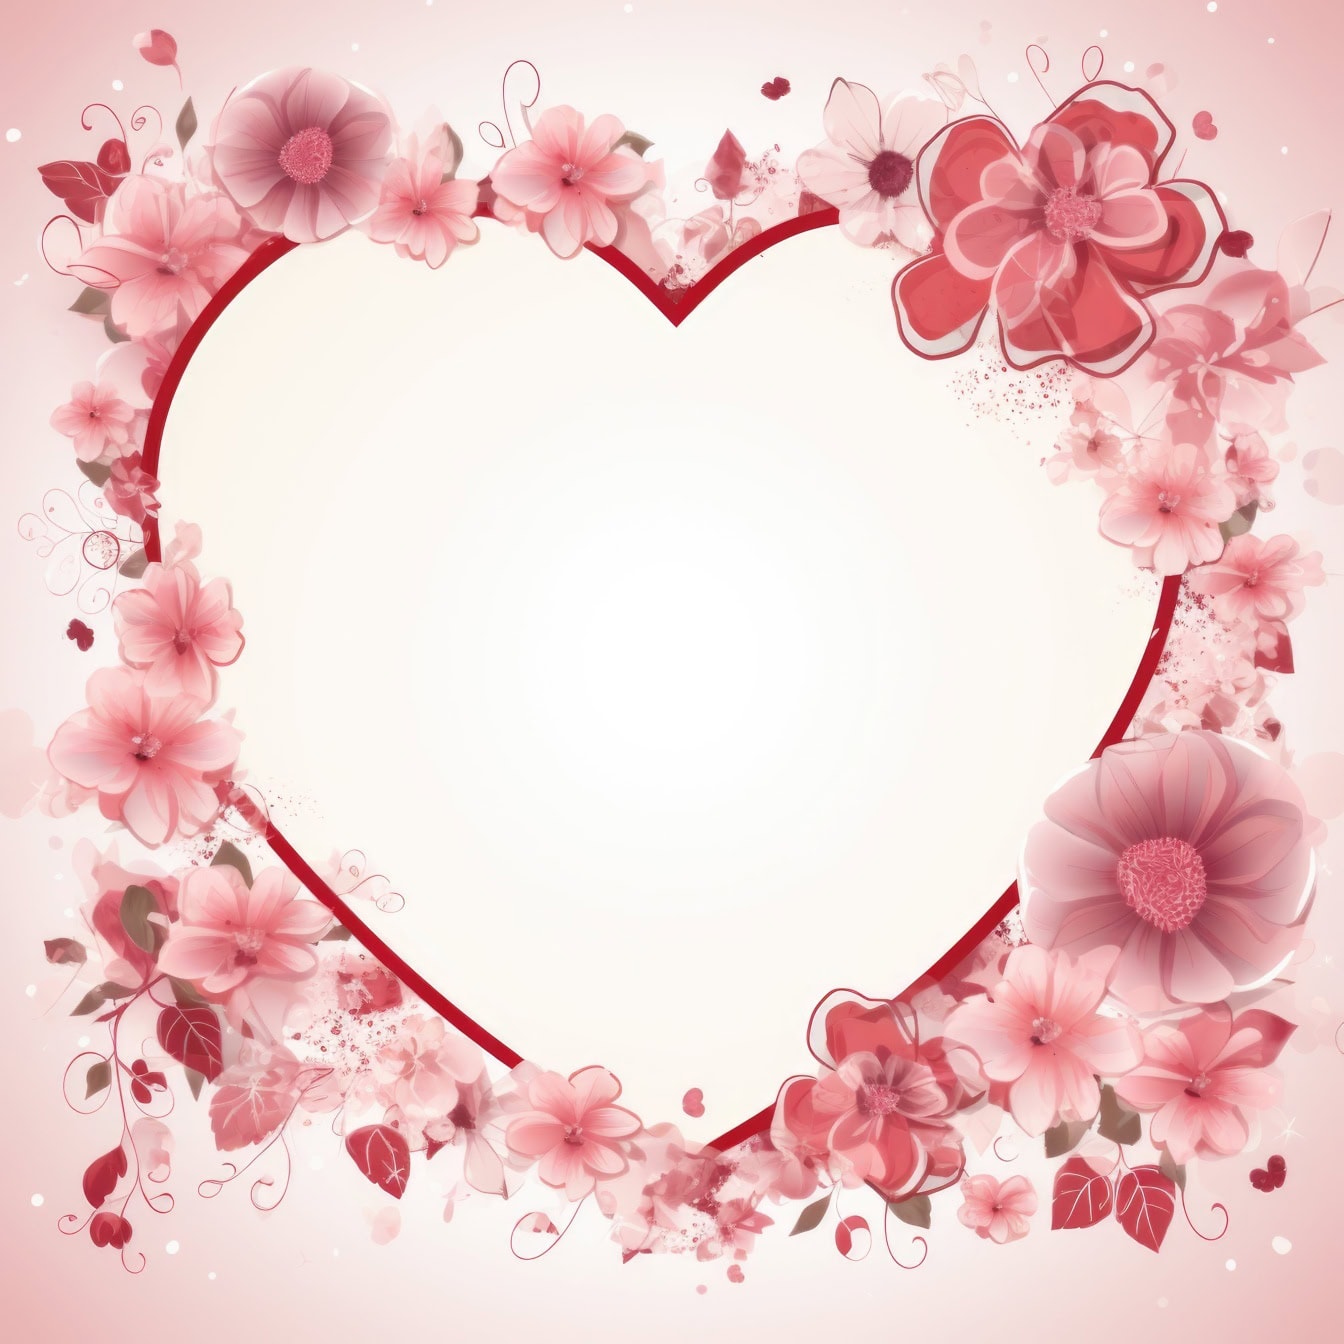 Romanttinen ystävänpäivän sydämenmuotoinen onnittelukorttipohja, jossa on kehys kukilla